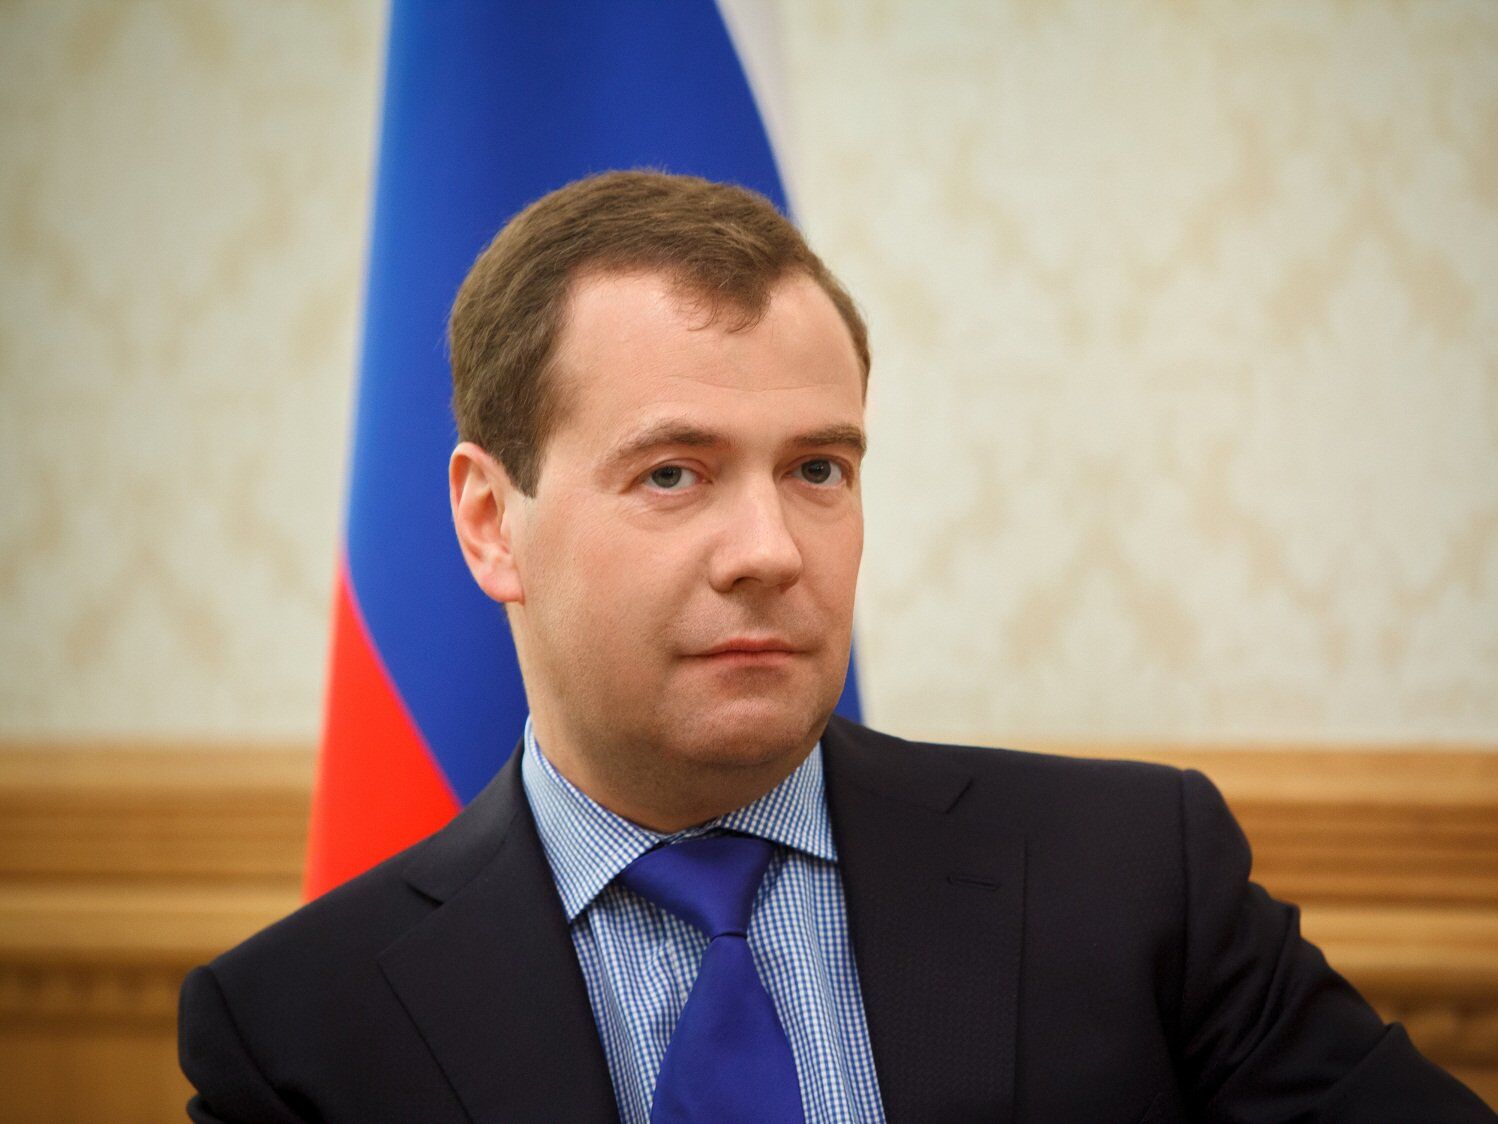 俄罗斯总理梅德韦杰夫首次成为媒体专栏作者 - 2019年2月13日, 俄罗斯卫星通讯社